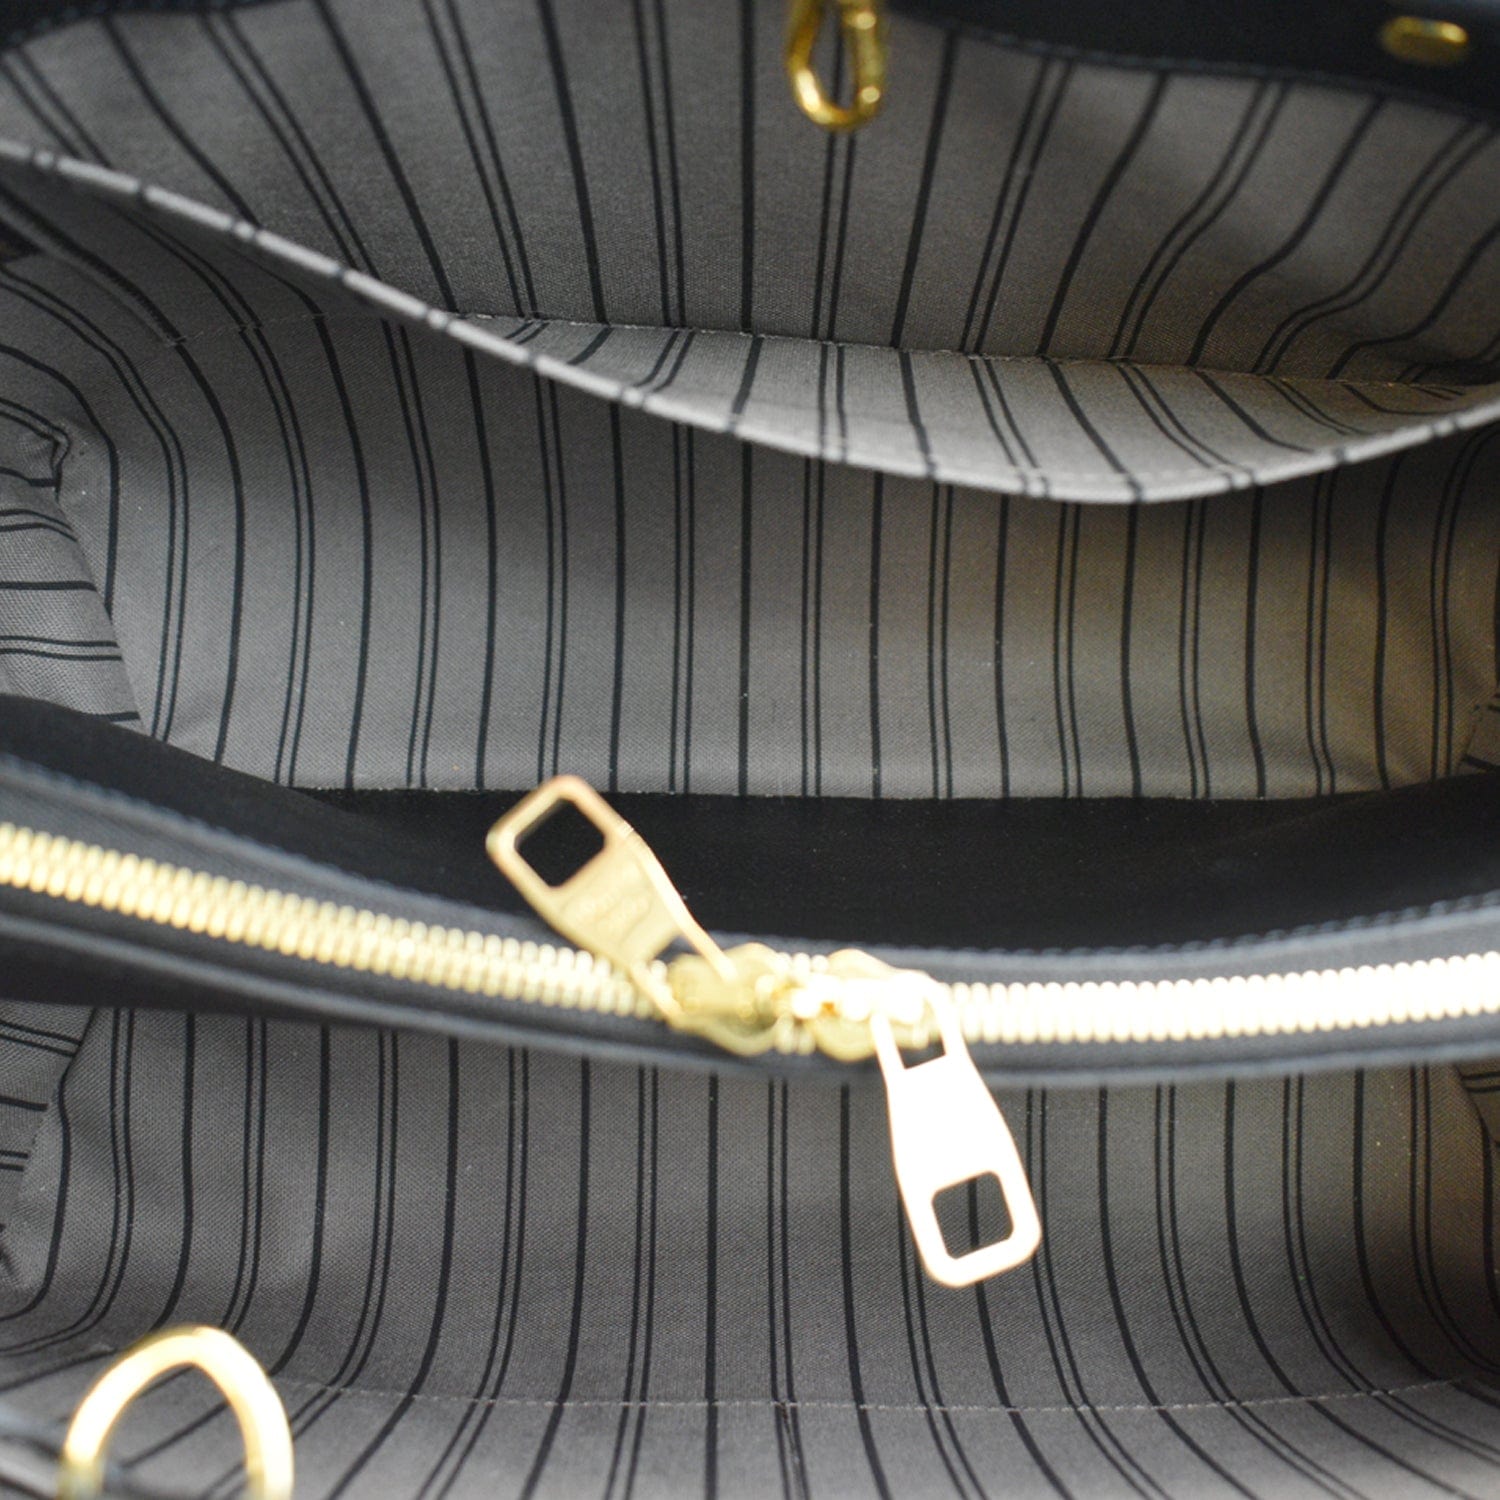 Louis Vuitton Montaigne Black Monogram Empreinte Leather Shoulder Bag -  MyDesignerly